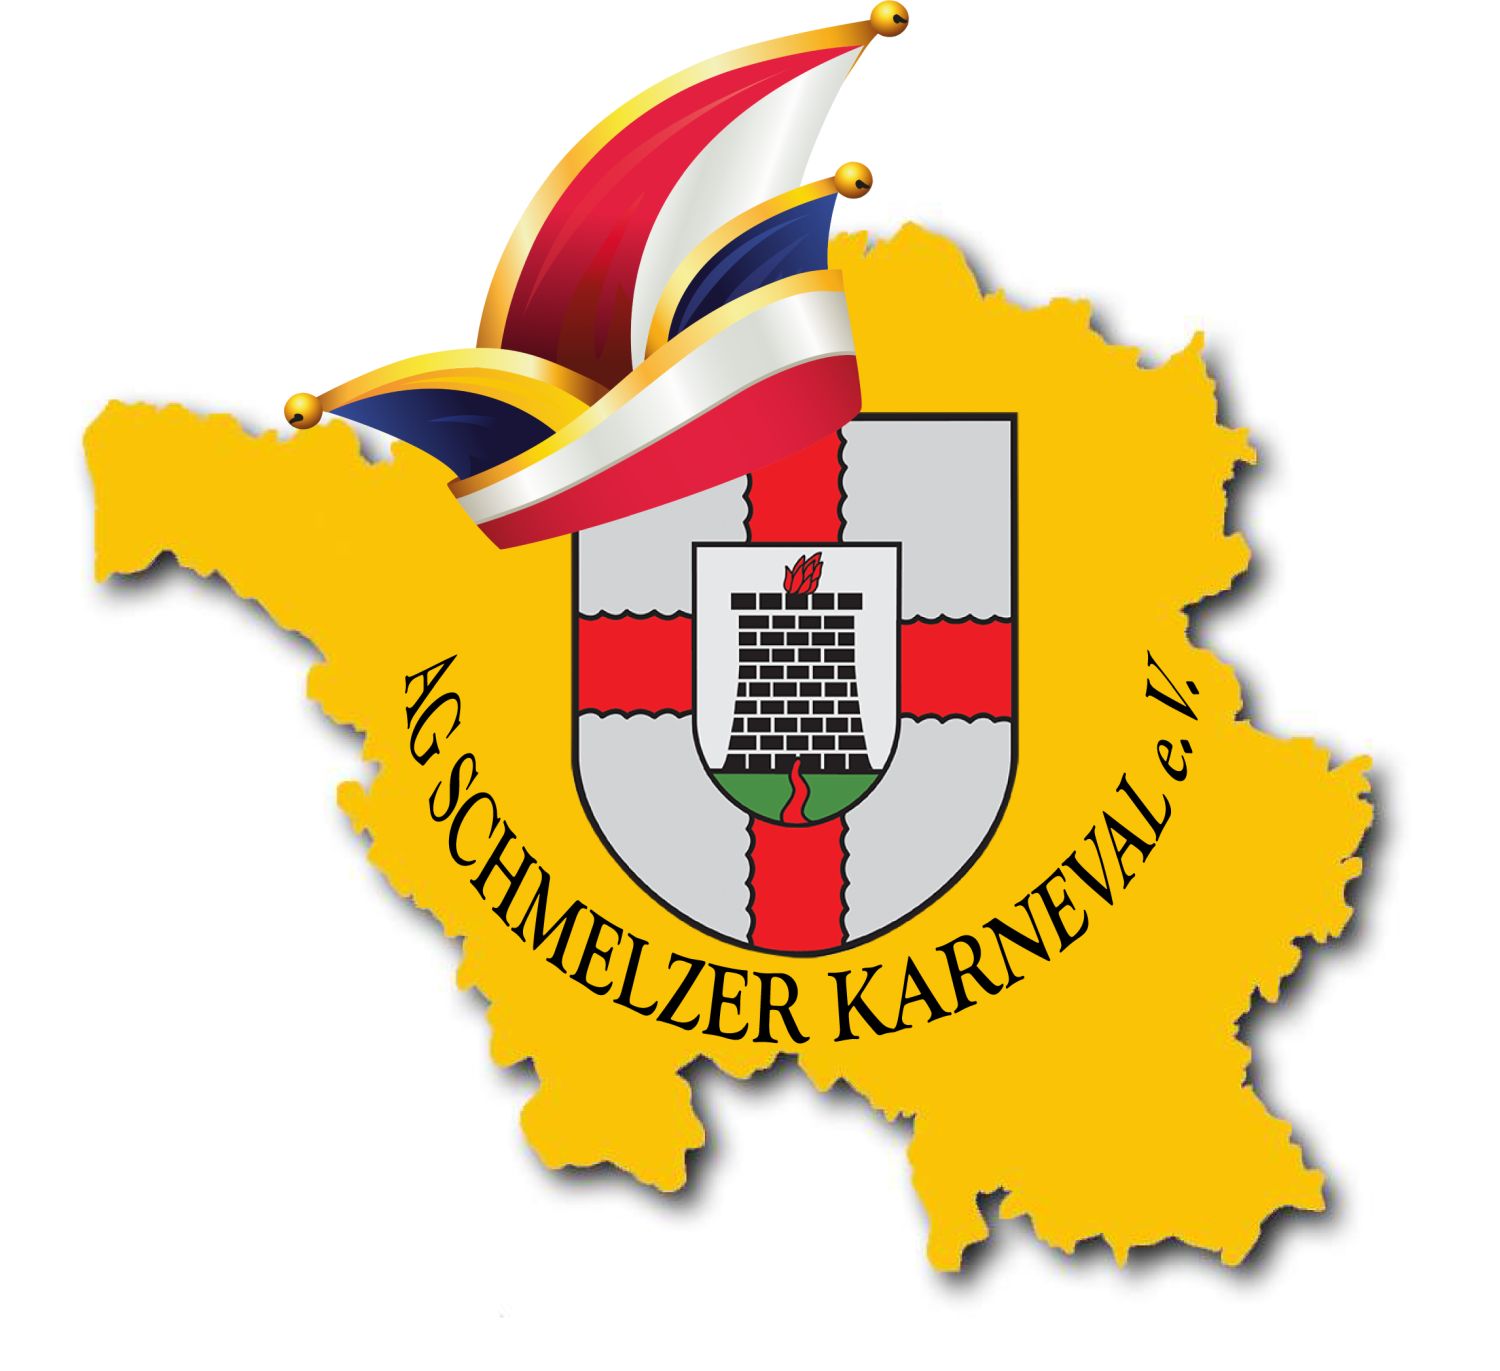 AG Schmelzer Karneval Logo